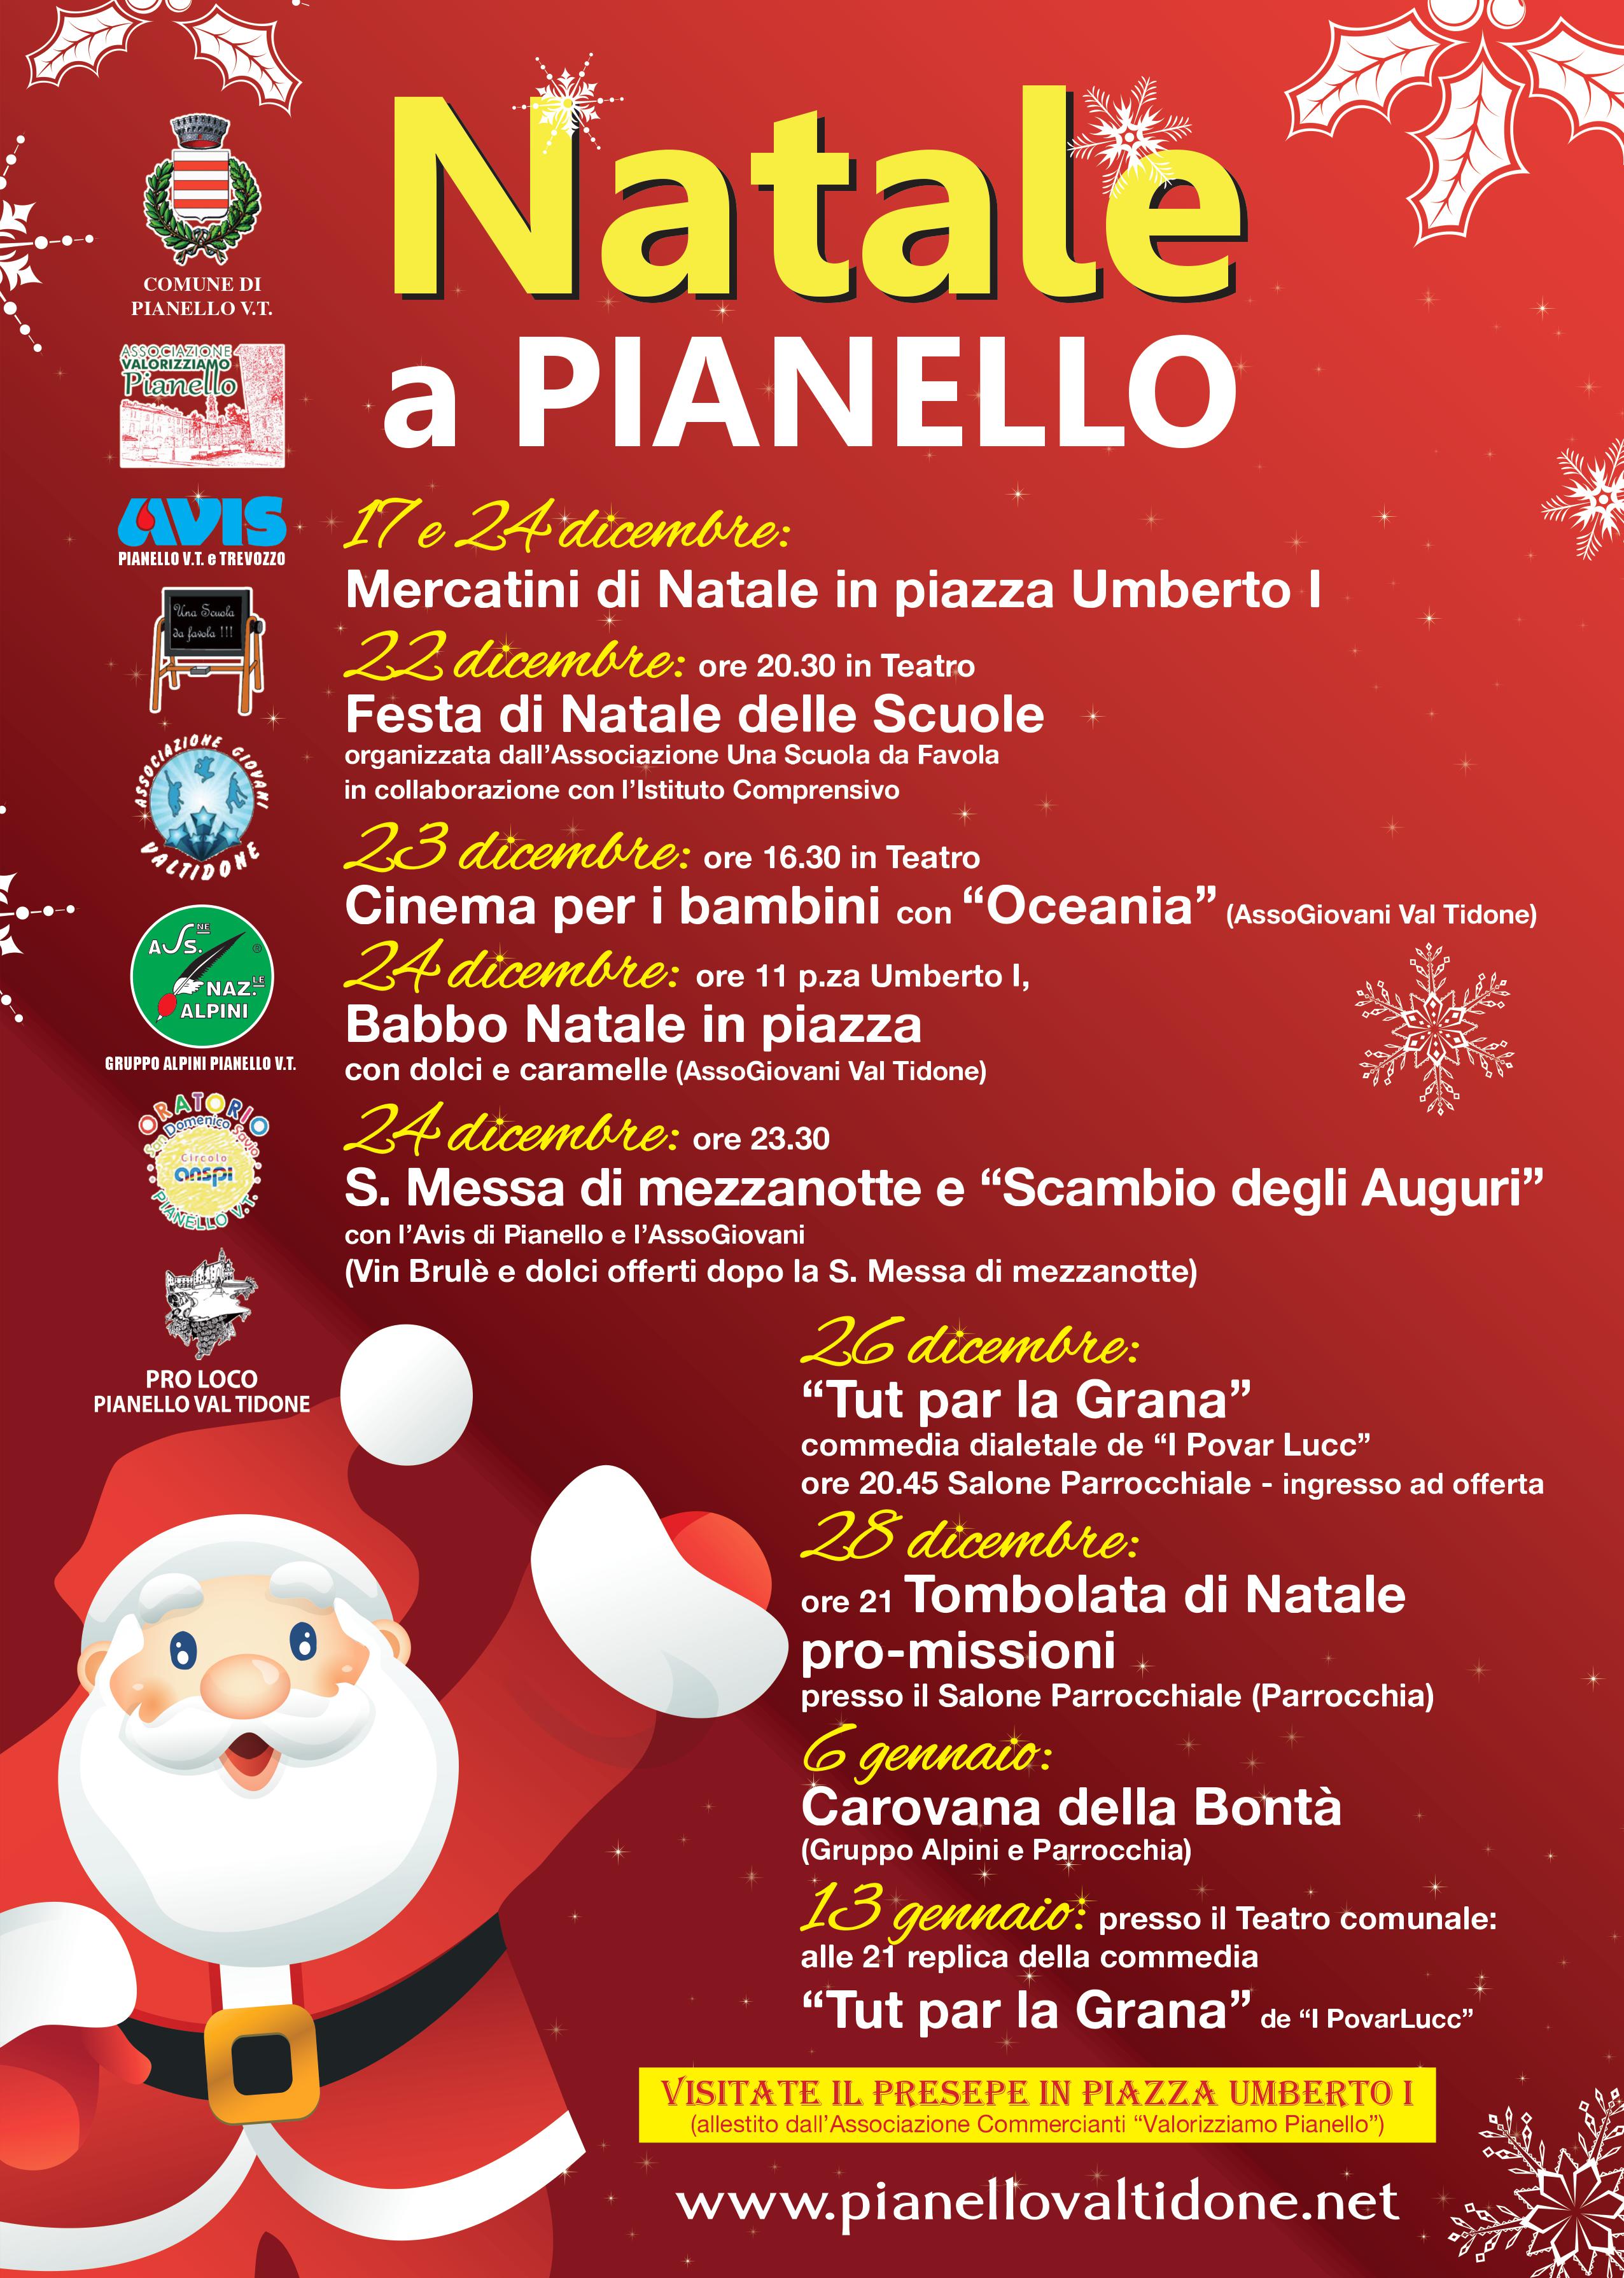 Natale a Pianello, tutti gli eventi di Natale a Pianello Val Tidone del 2017